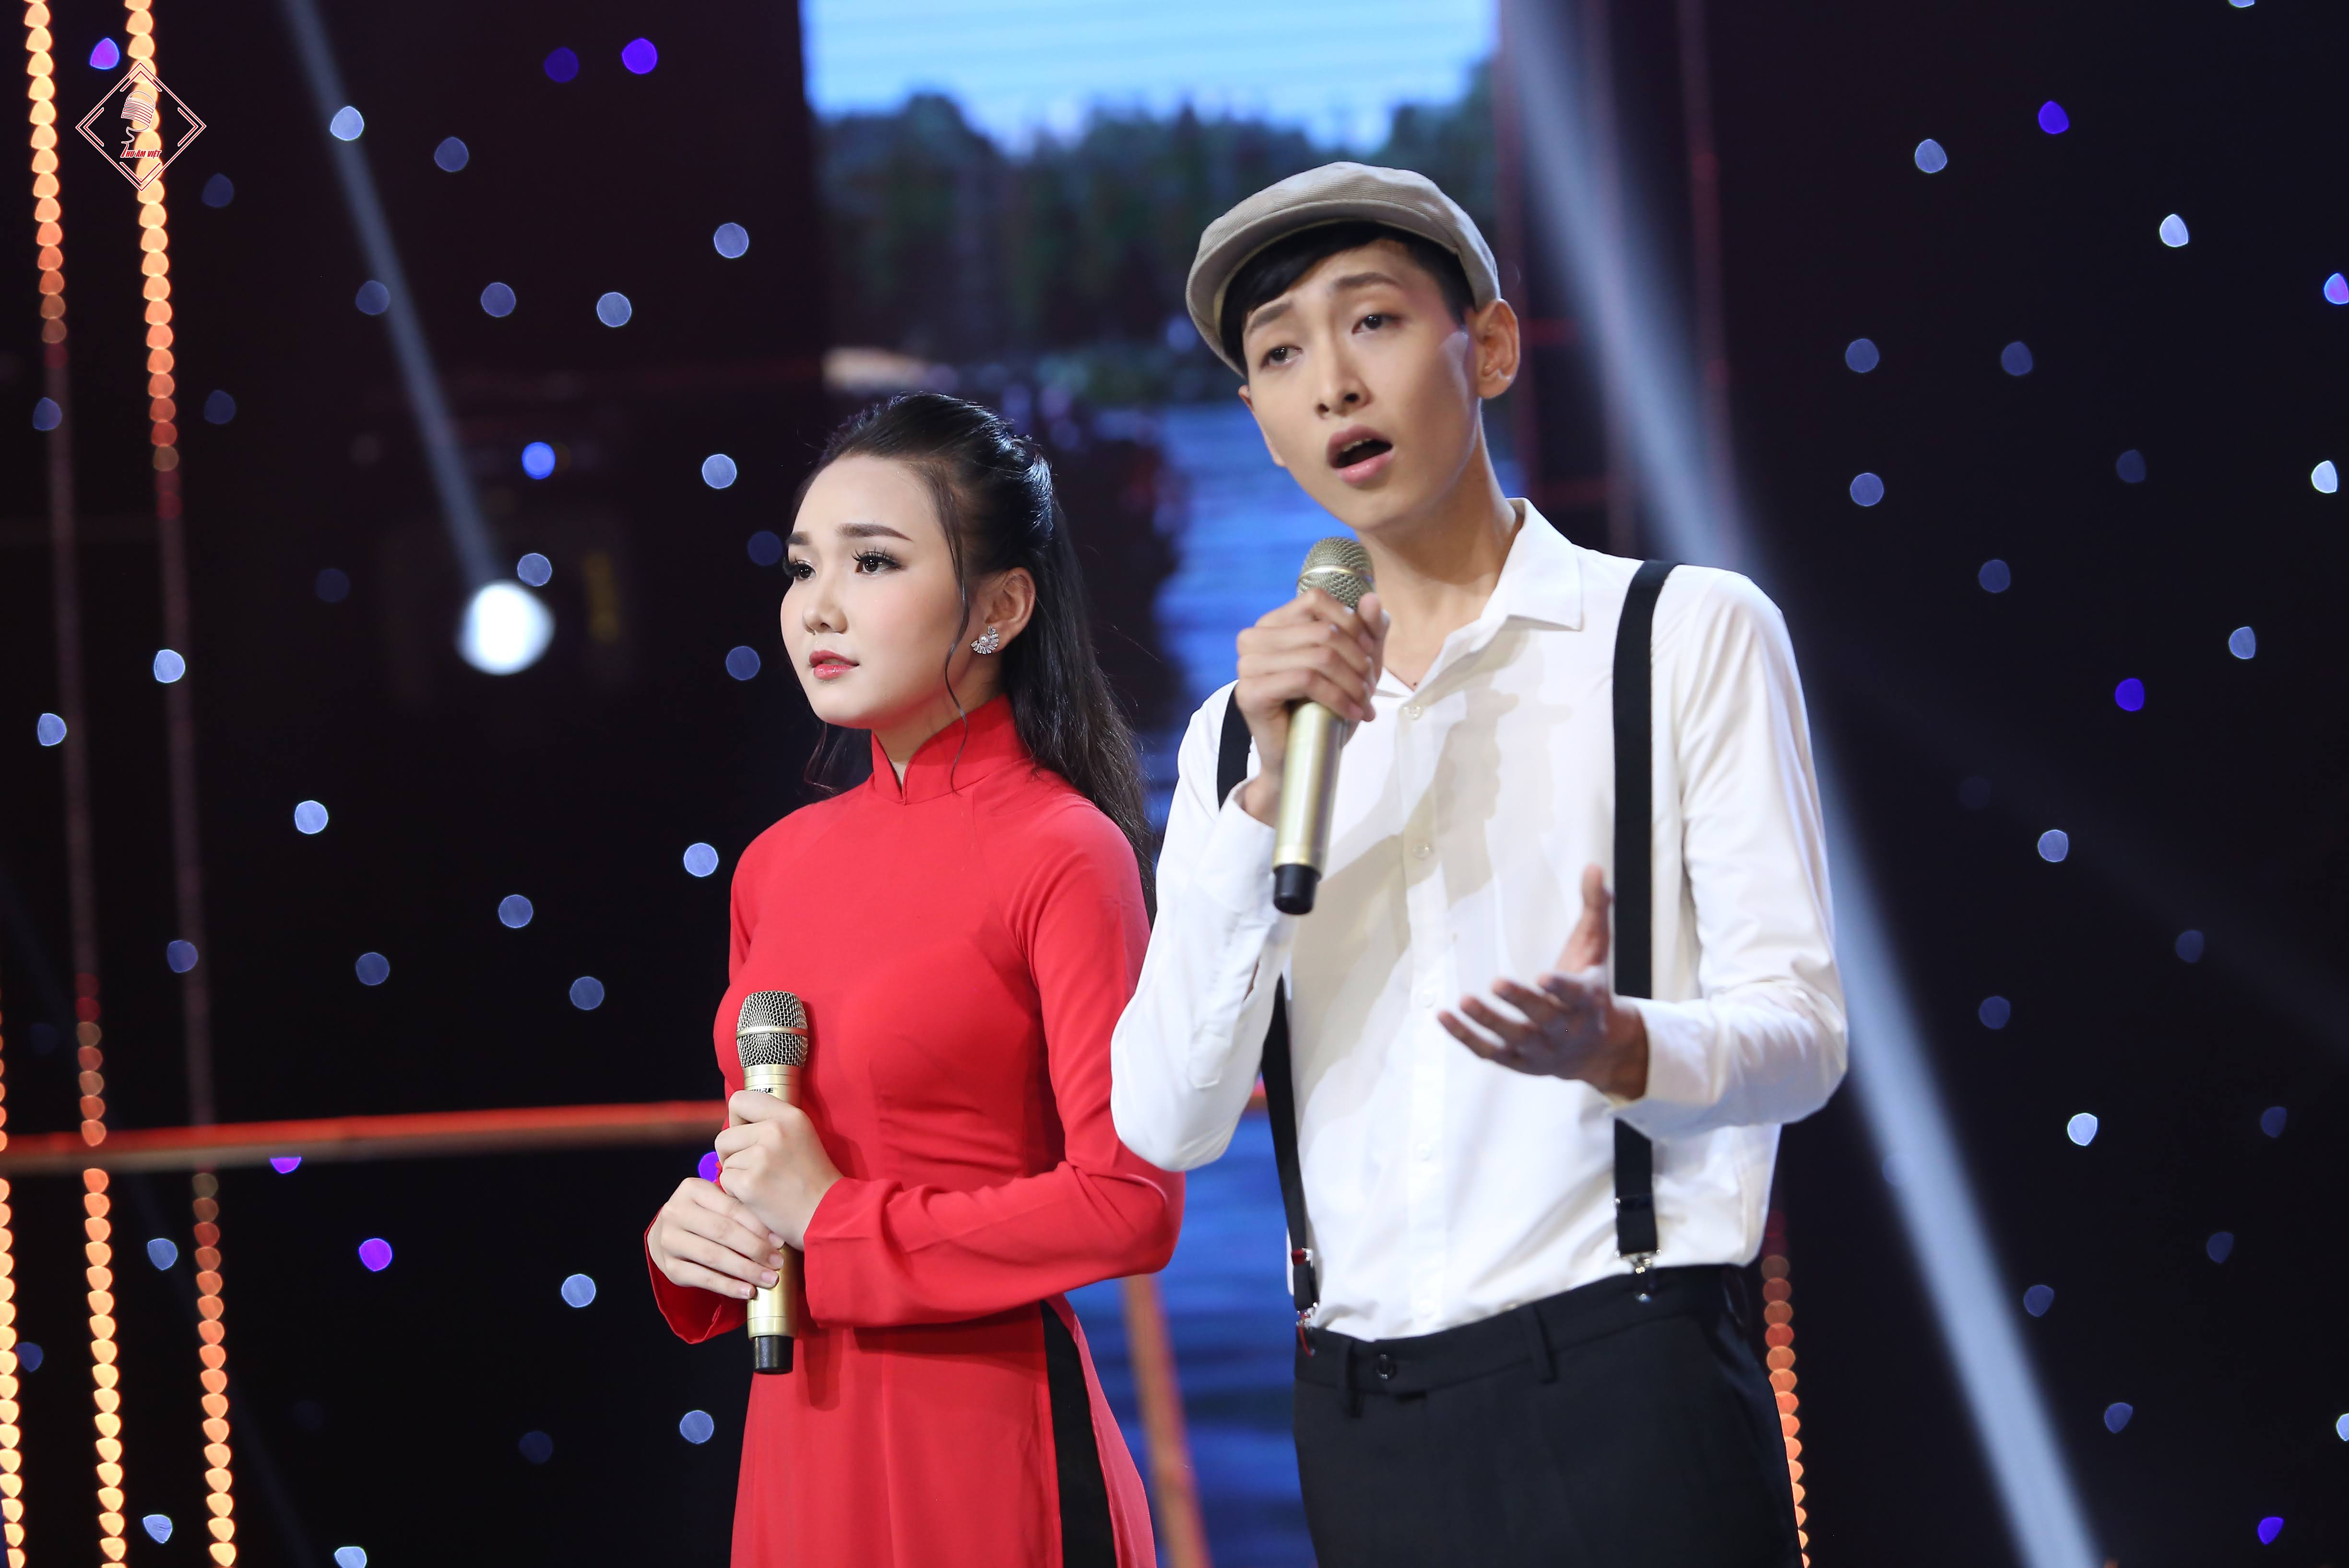 Ca sĩ Ngọc Trân và Kha Duy trong một dự án quay MV sân khấu do Thu Âm Việt sản xuất